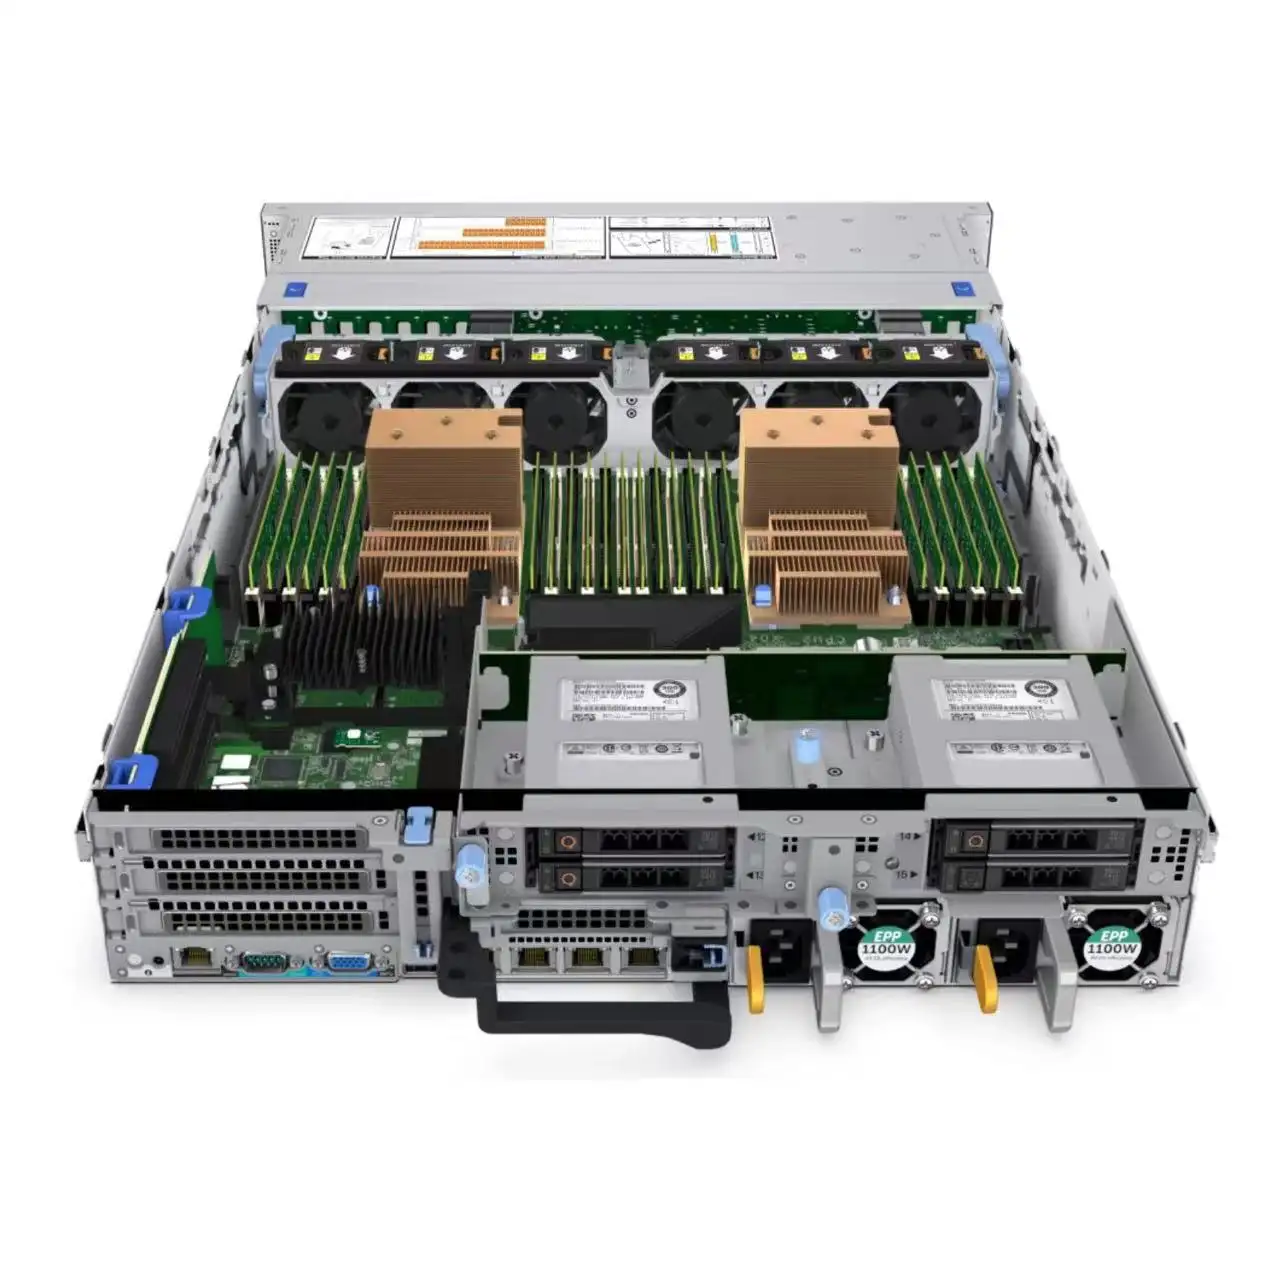 R750xa rack de servidor 2U original, novo, de alta qualidade, com garantia de 3 anos, compatível com R740 R750 R750xs R760, novidade em promoção